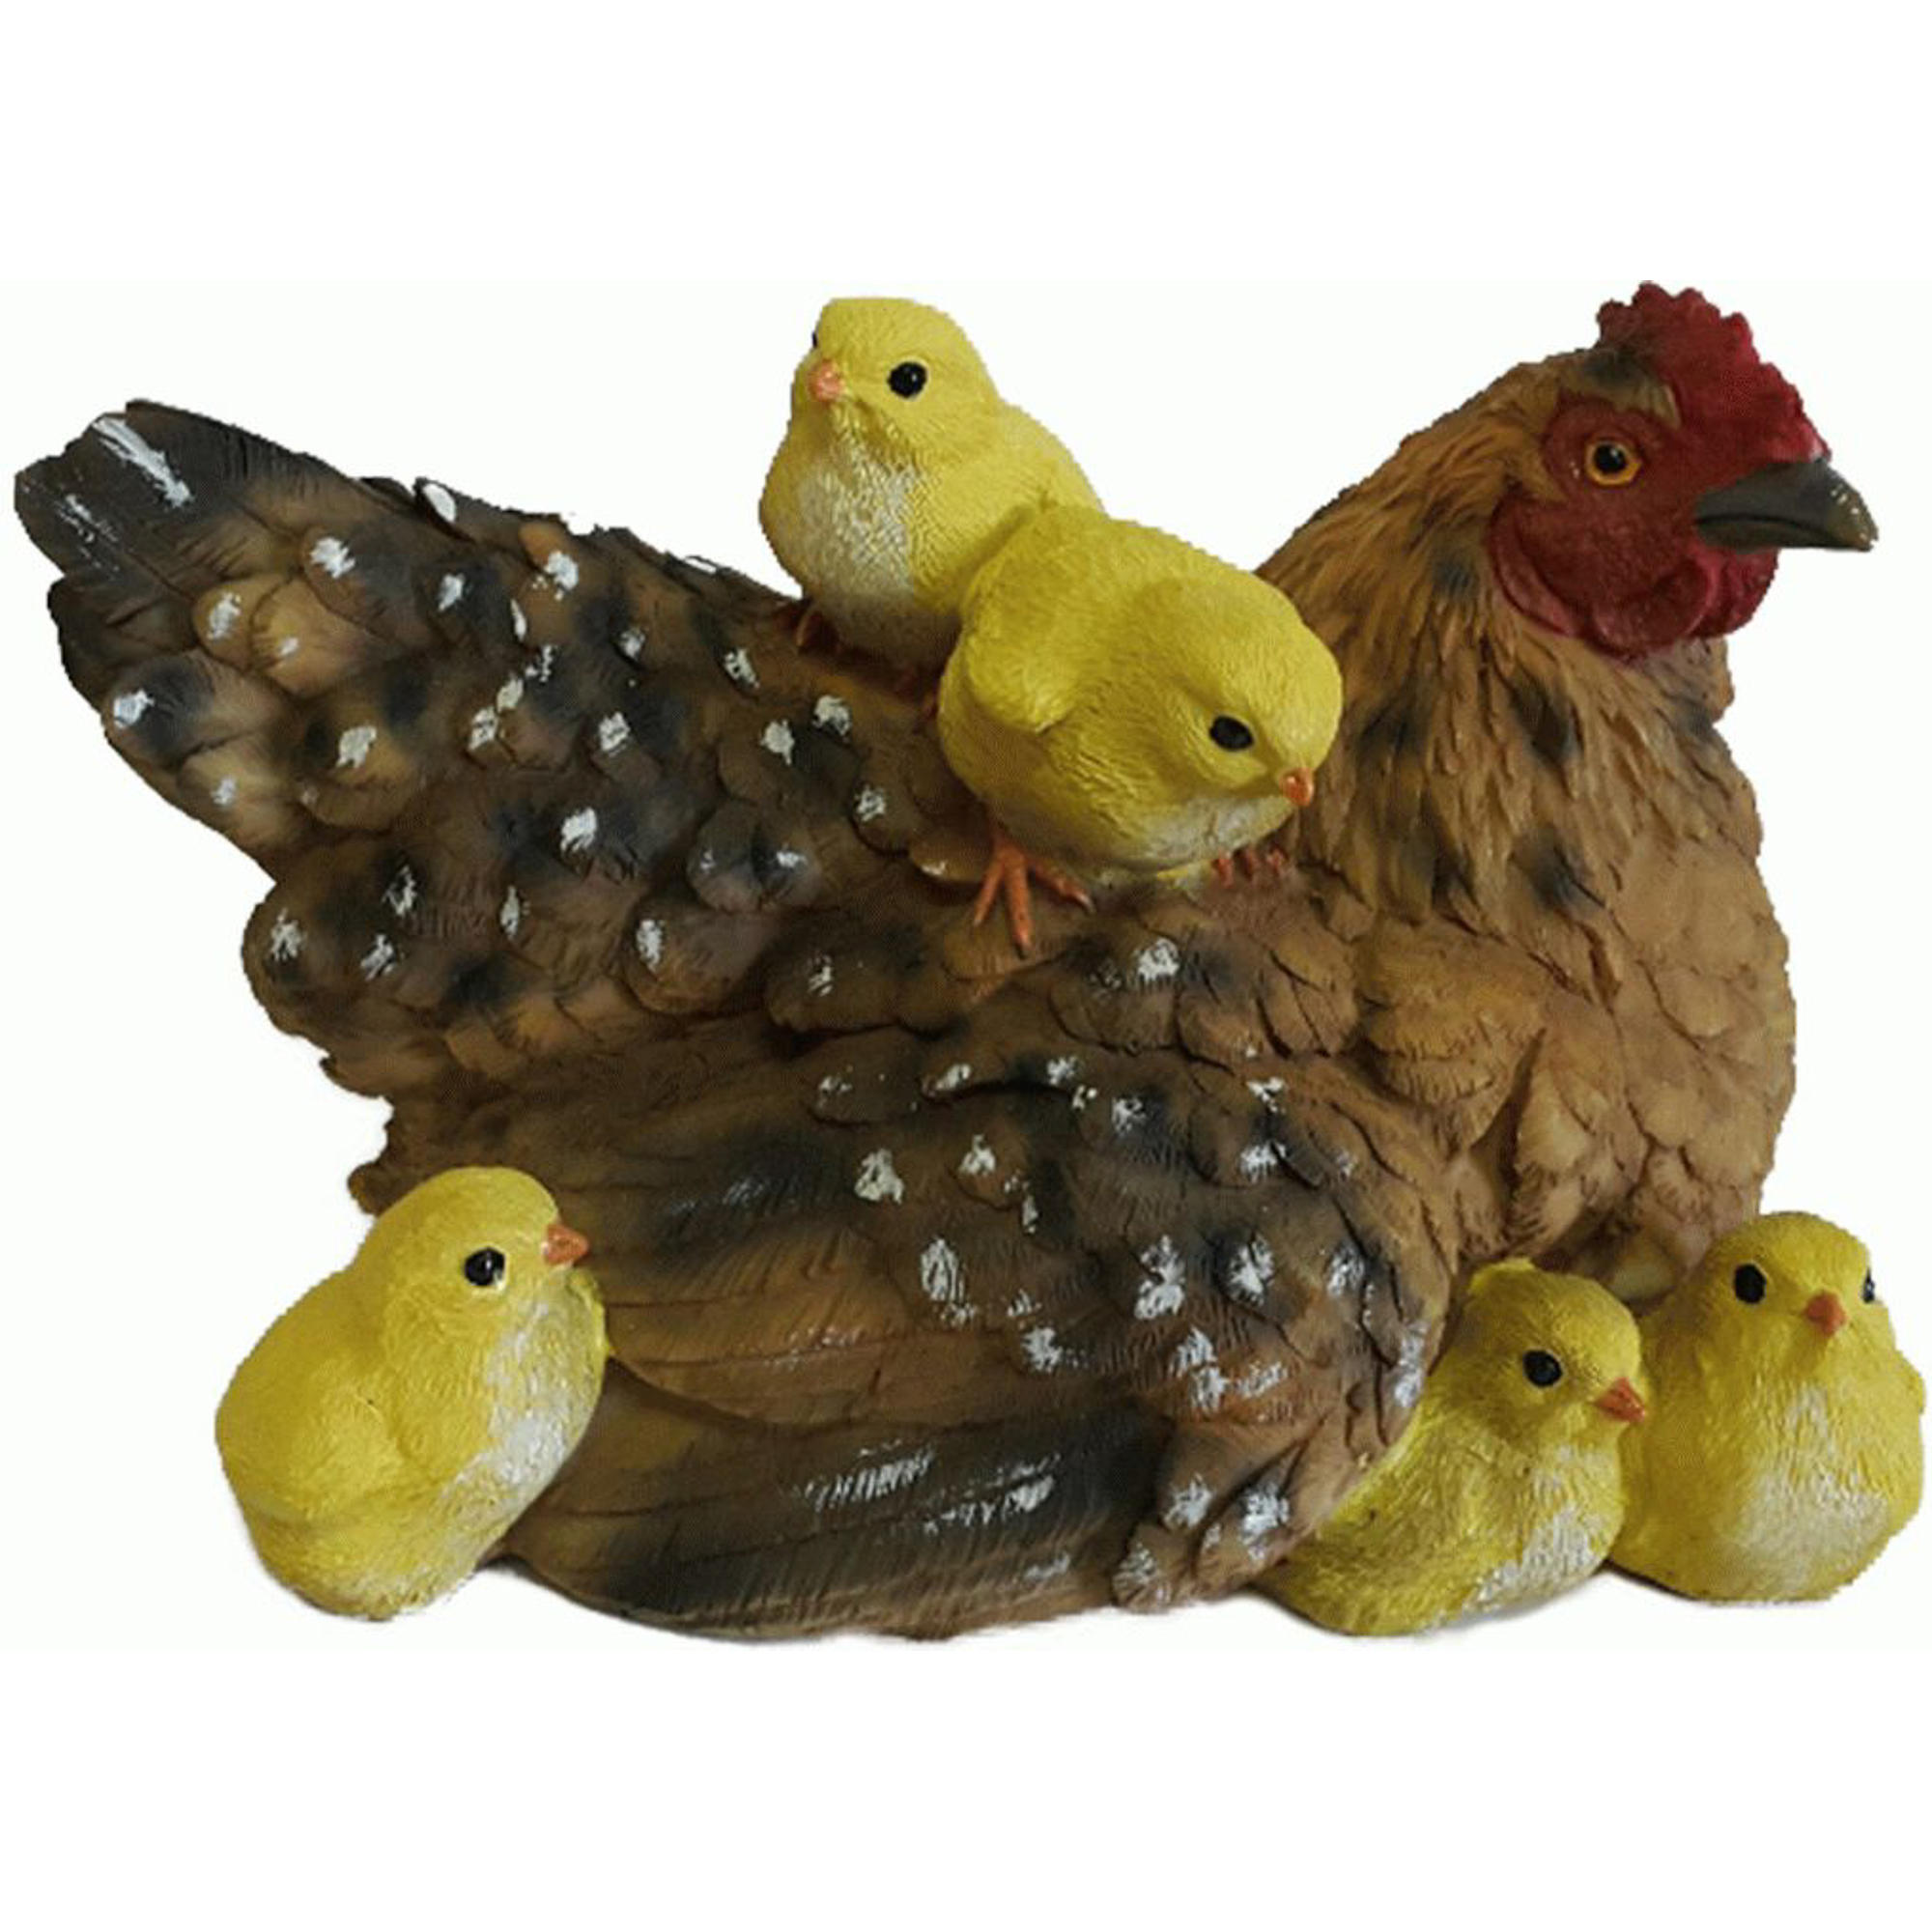 Фигура садовая Курица-мама с детьми Тпк полиформ